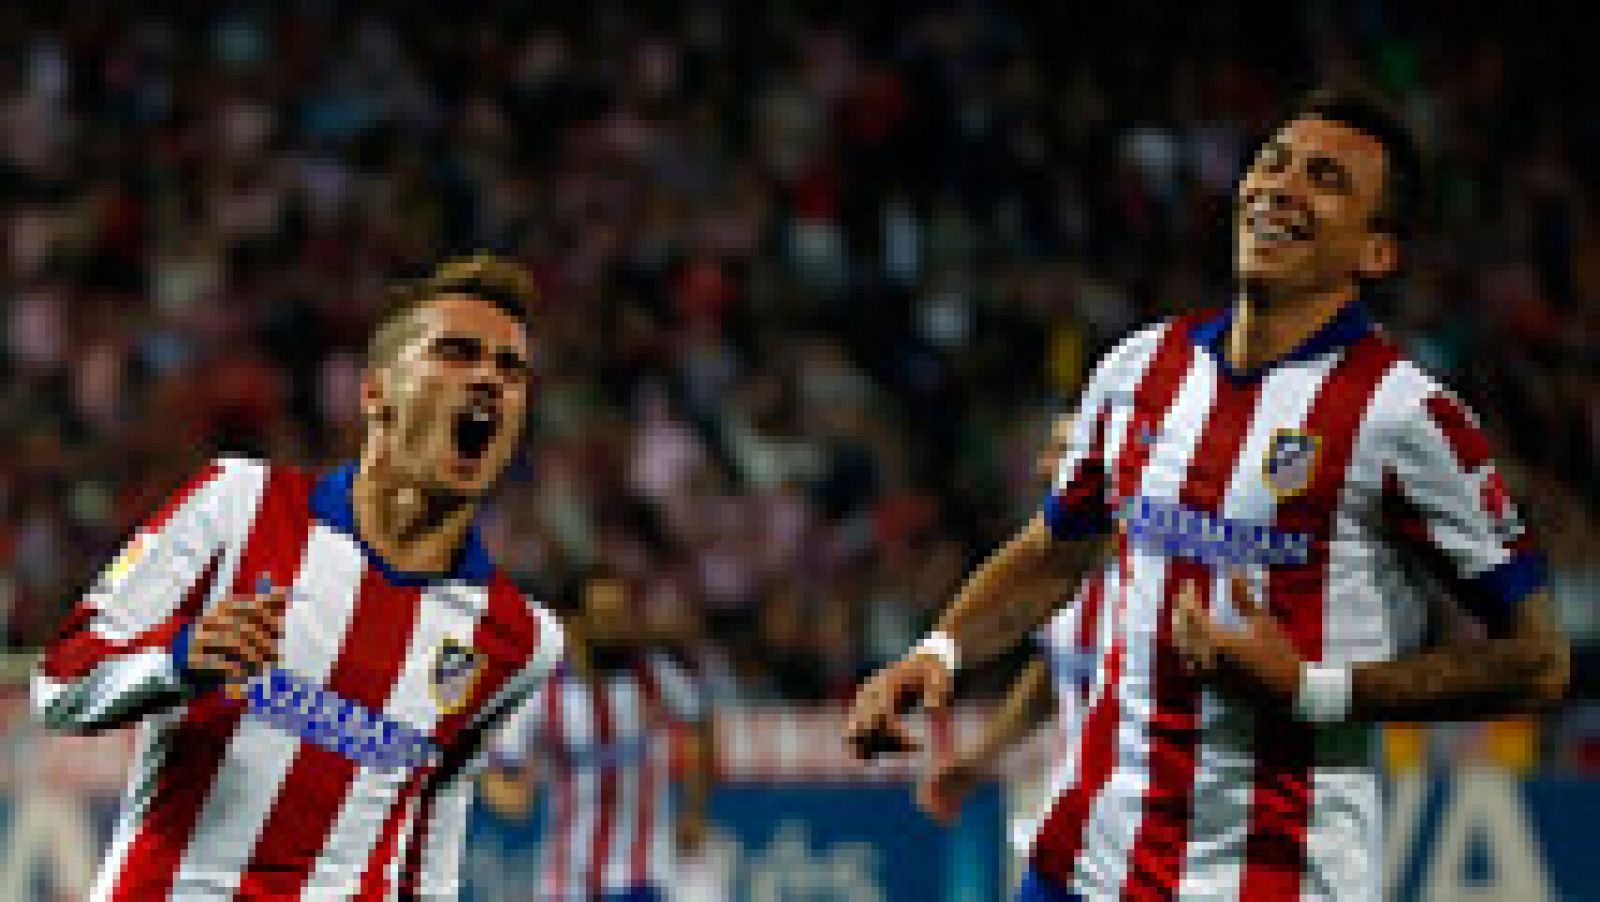 El Atlético de Madrid ha goleado al Córdoba en un buen partido de su delantera, con dos goles de Griezmann, Mandzukic y Raúl García.